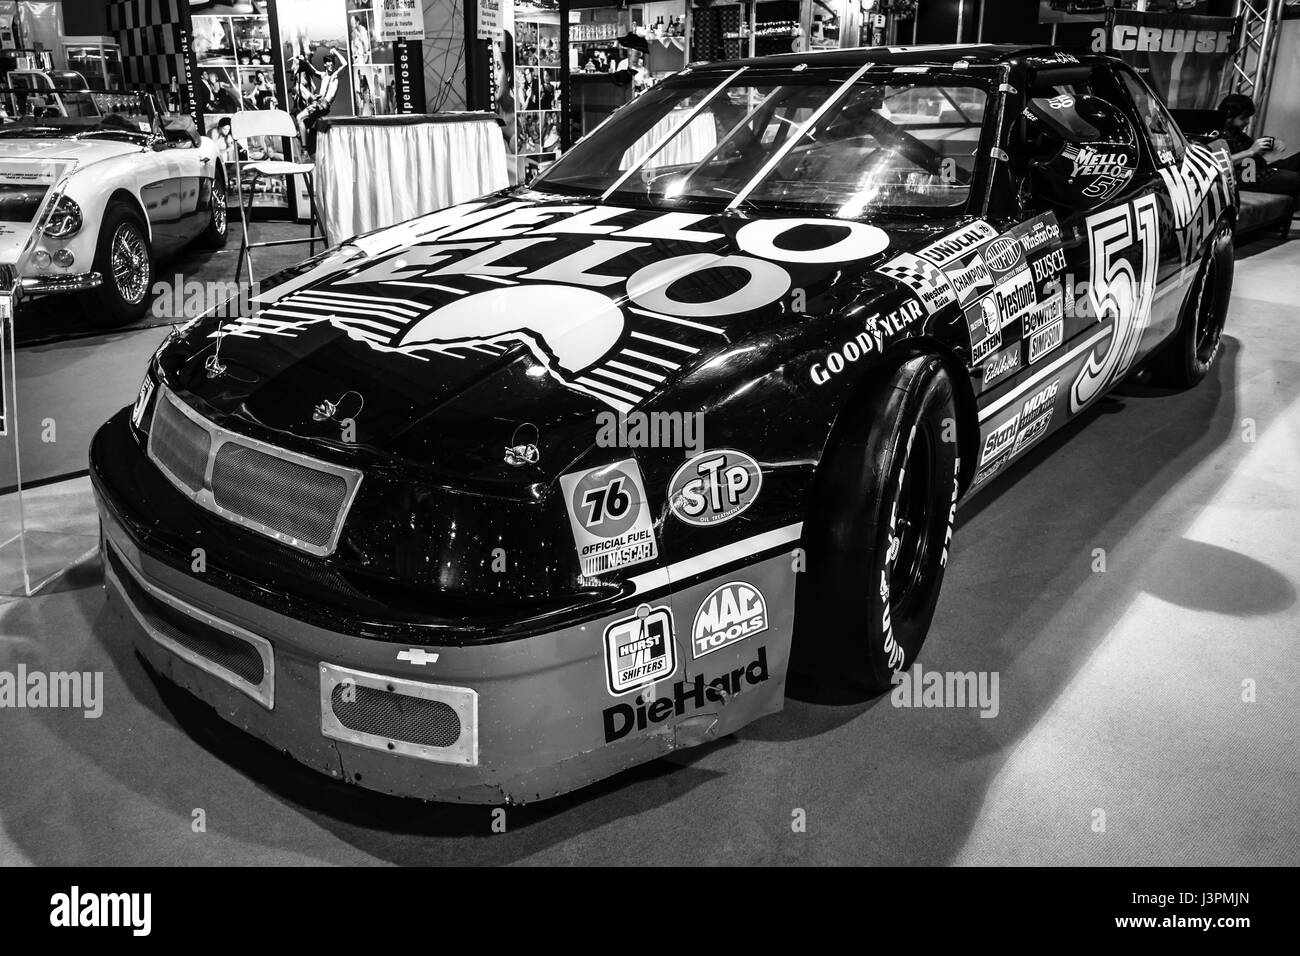 STUTTGART, Deutschland - 3. März 2017: Race Car Chevrolet Lumina Nascar, 1989. Schwarz und weiß. Europas größte Oldtimer-Messe "RETRO CLASSICS" Stockfoto